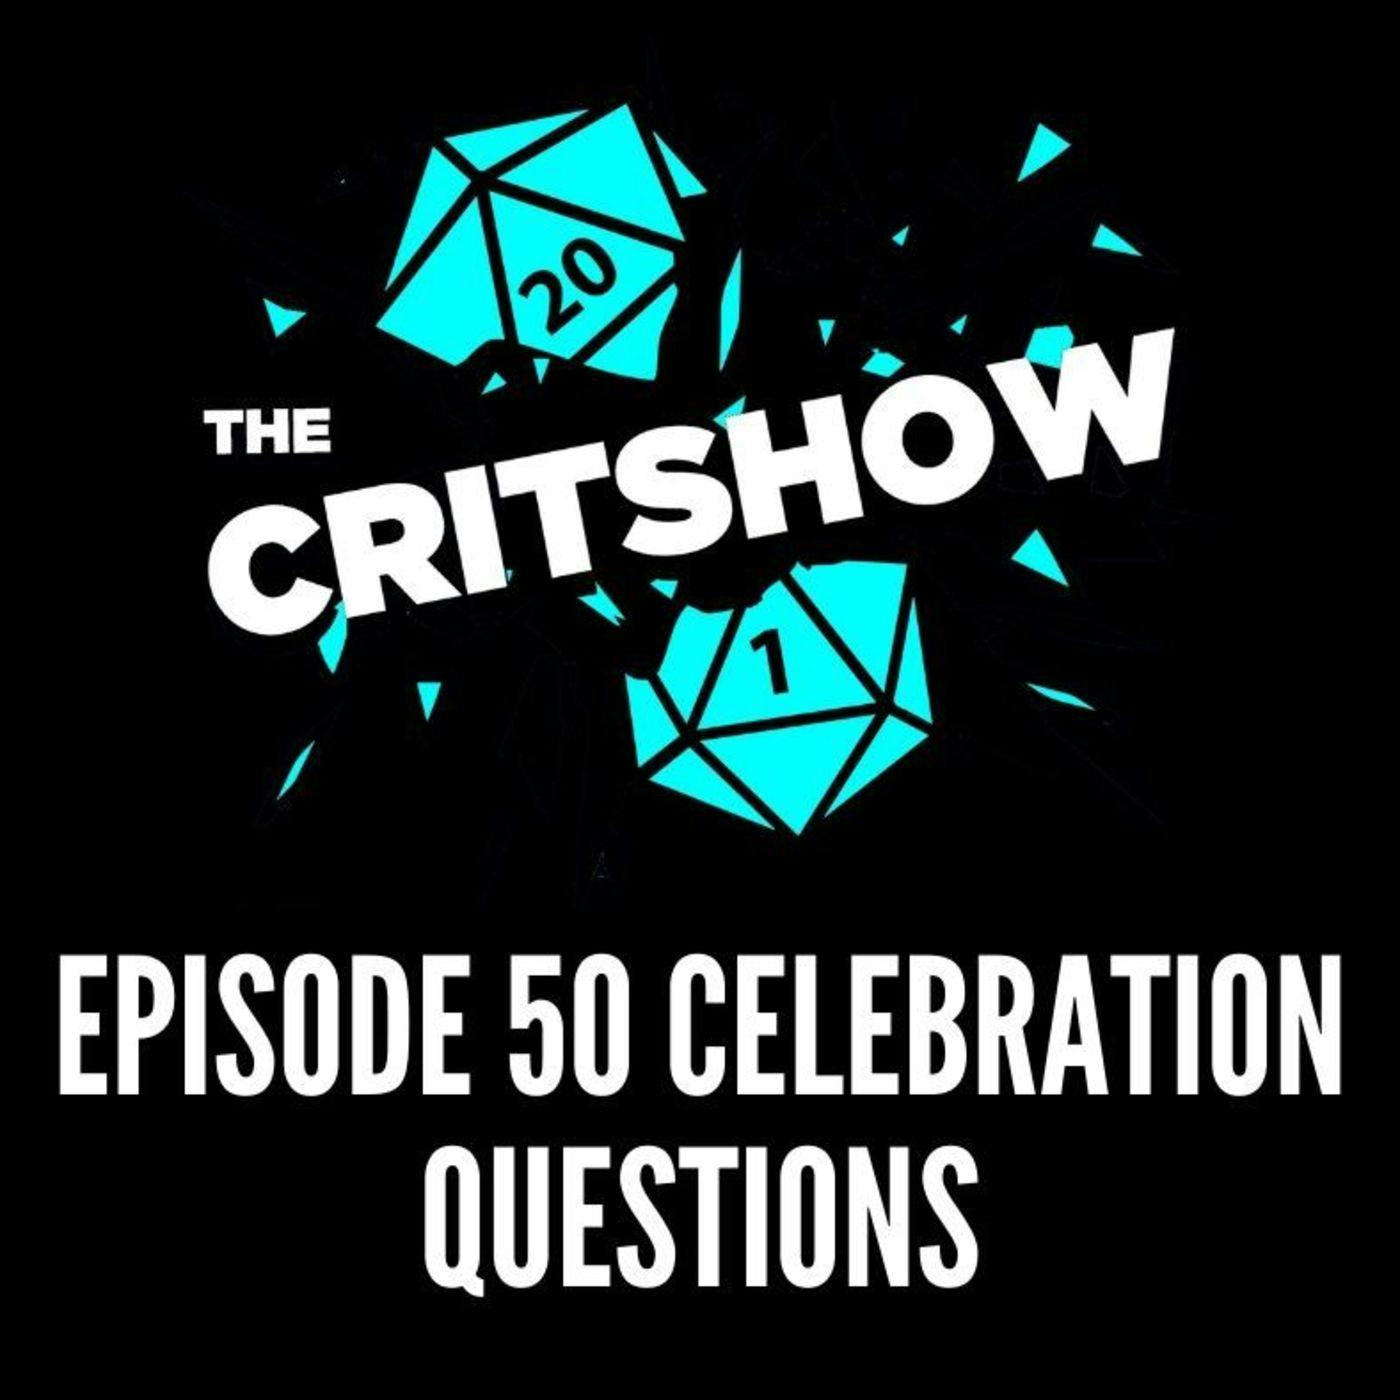 Episode 50 Celebration Questions (S1 E50-Q/A)